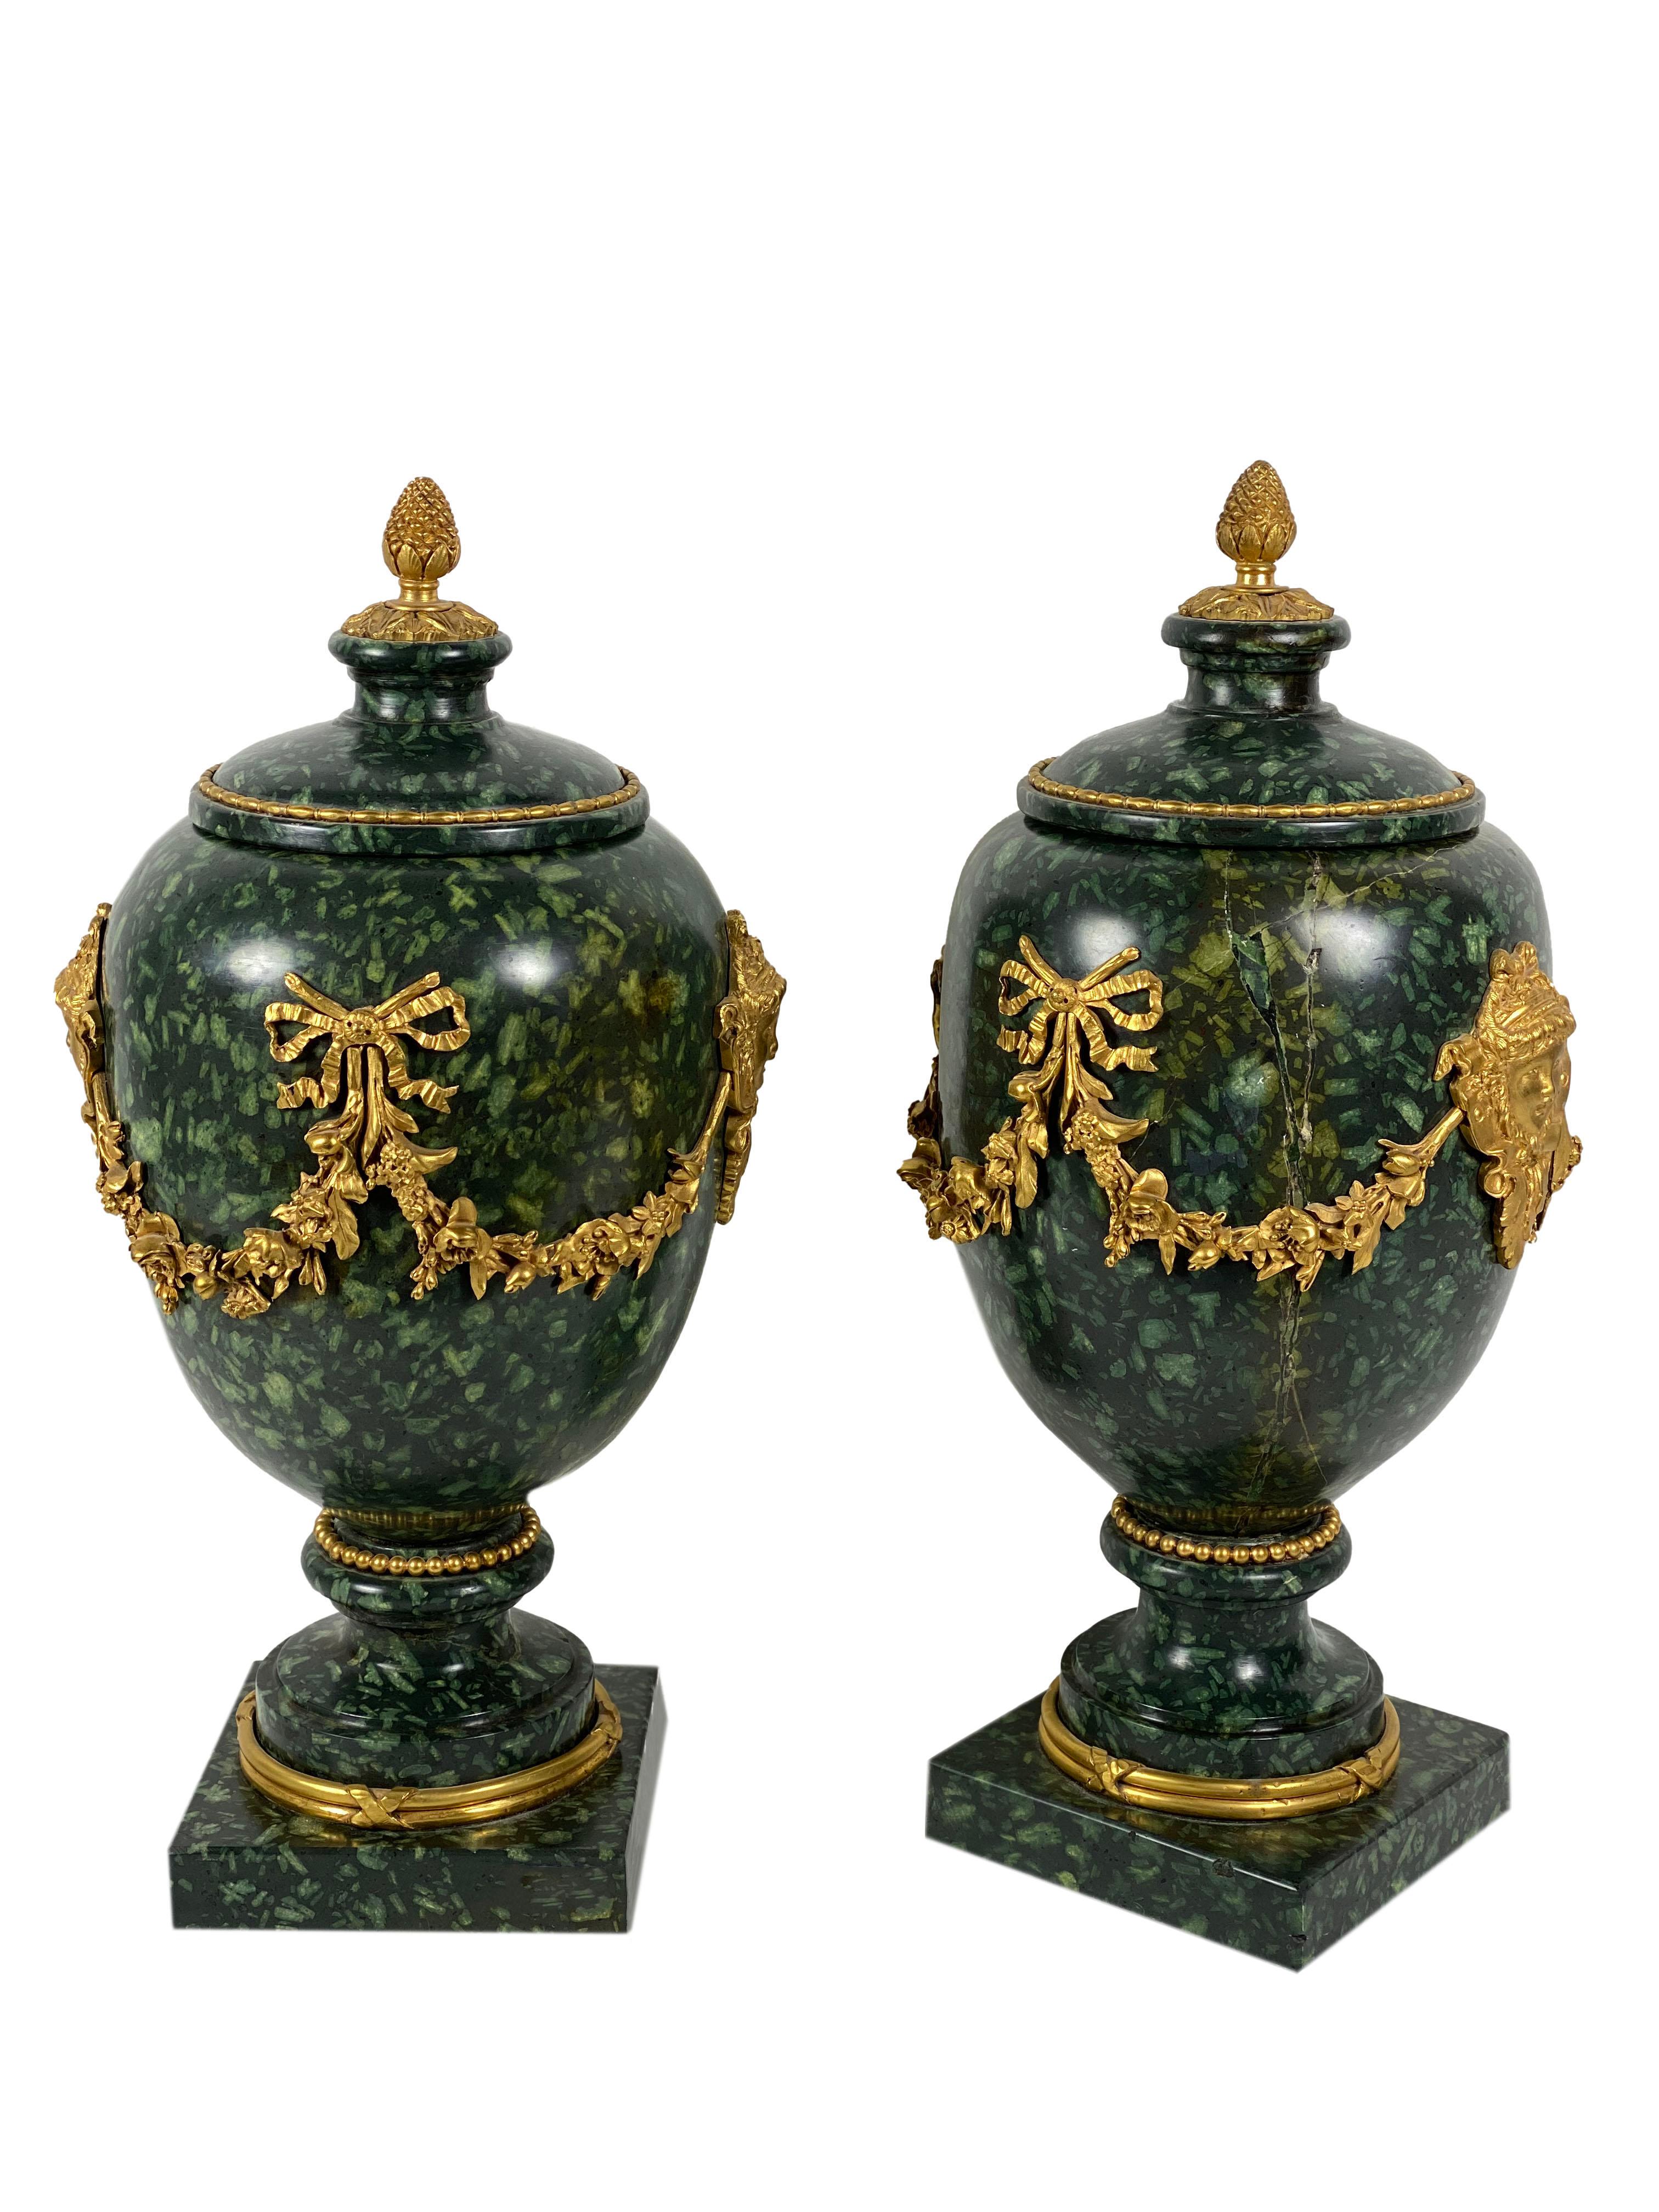 Louis XV 18th Century Italian Porphyry Vases with Bronze Dore Mounts, a Pair